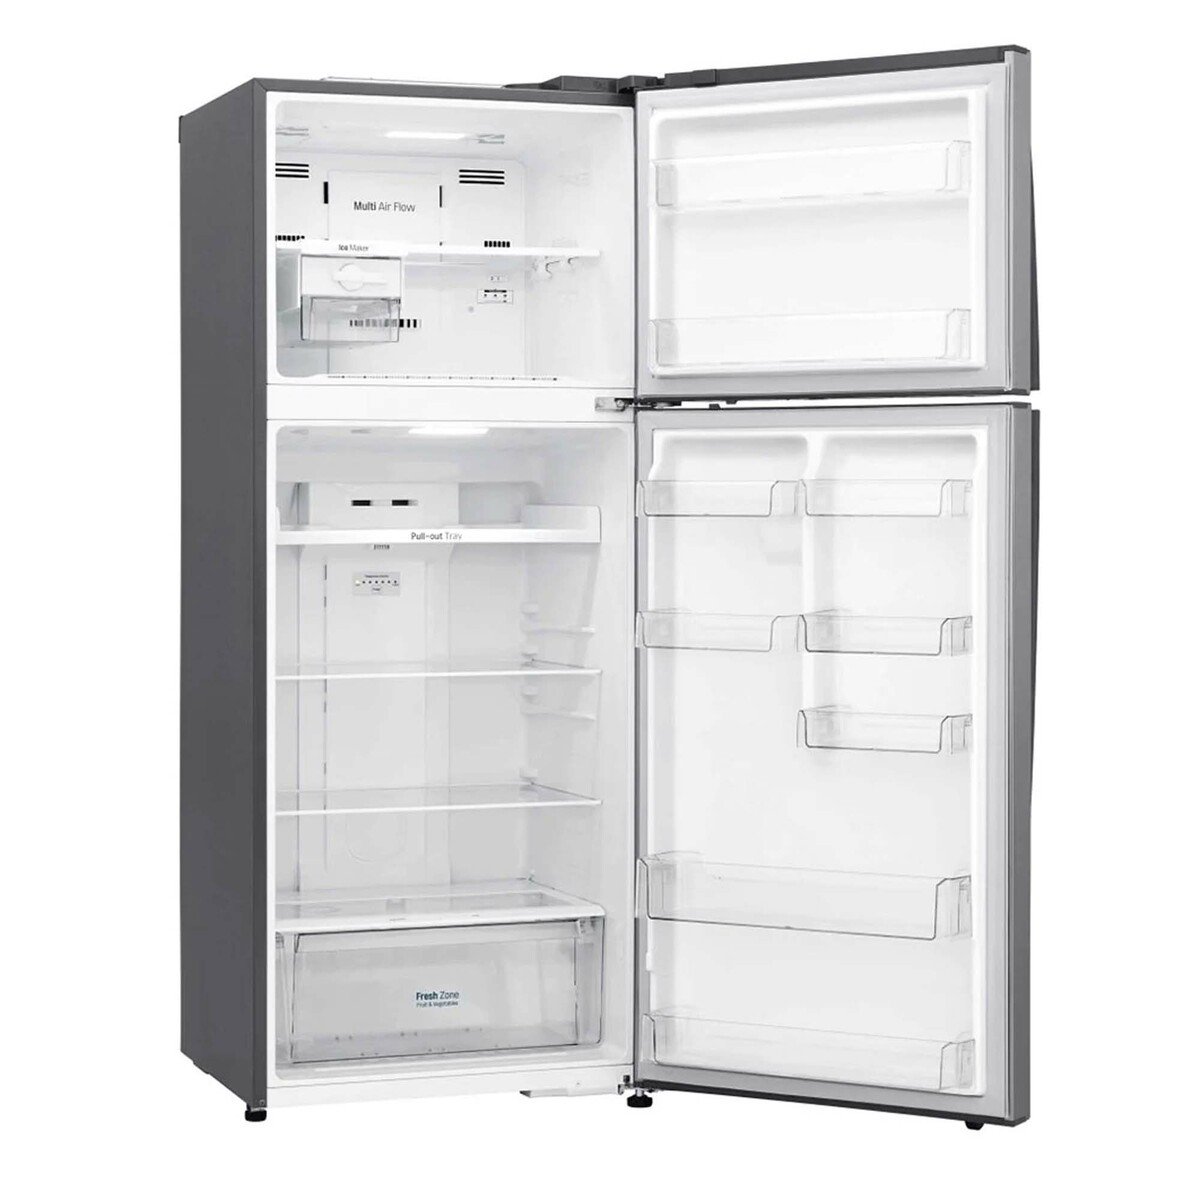 LG Double Door Refrigerator 438LTR, Smart Inverter Compressor, DoorCooling+™,Multi Air Flow, Platinum Silver, GR-C619HLCL